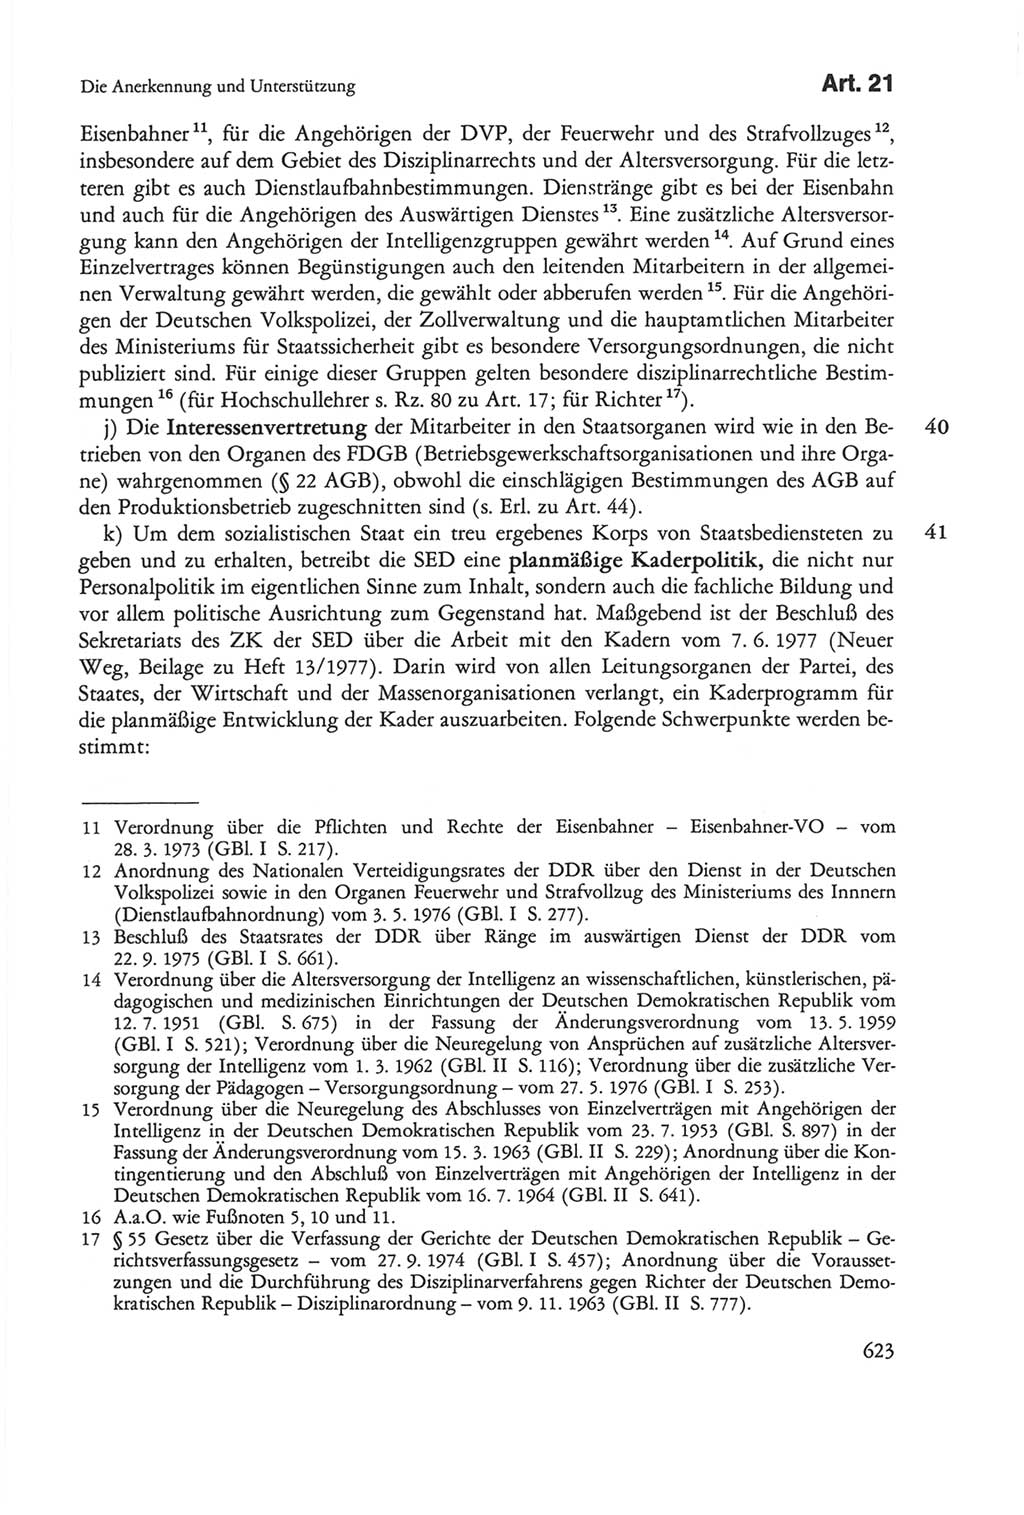 Die sozialistische Verfassung der Deutschen Demokratischen Republik (DDR), Kommentar mit einem Nachtrag 1997, Seite 623 (Soz. Verf. DDR Komm. Nachtr. 1997, S. 623)